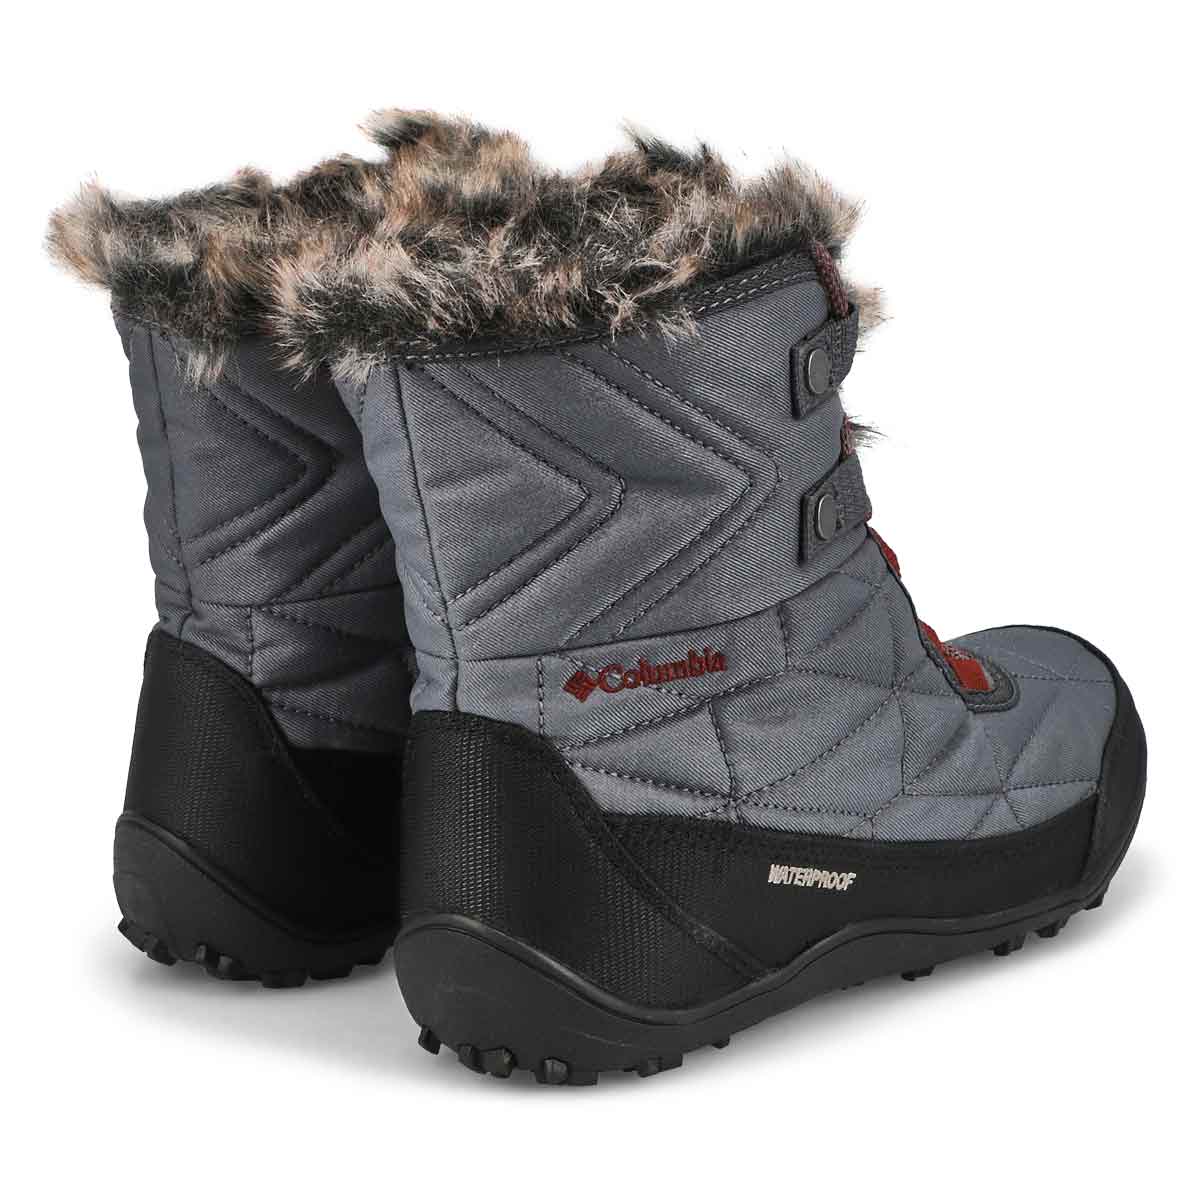 Women's Minx Shorty III Waterproof Winter Boot - Graphite